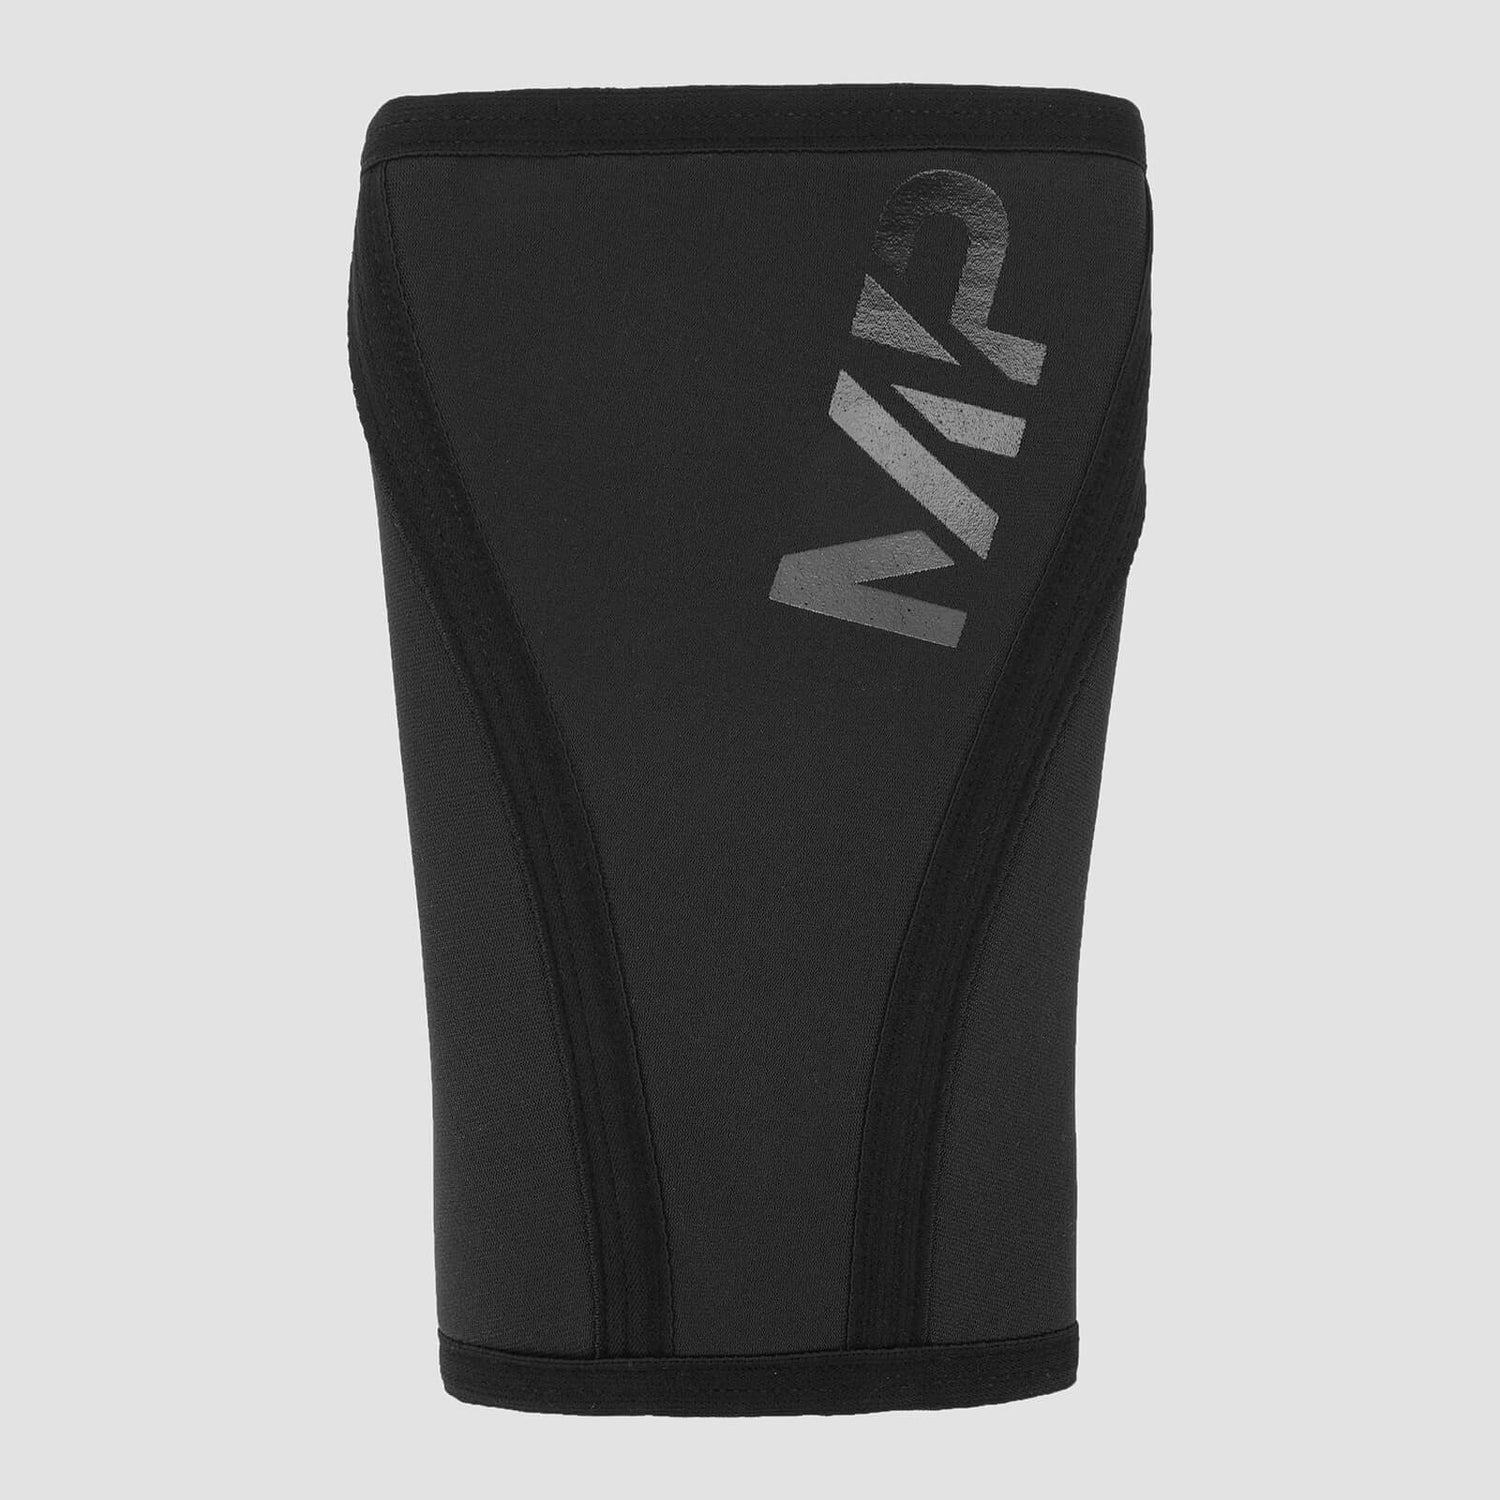 MP Unisex Training Knee Sleeve Pair - Black - XL